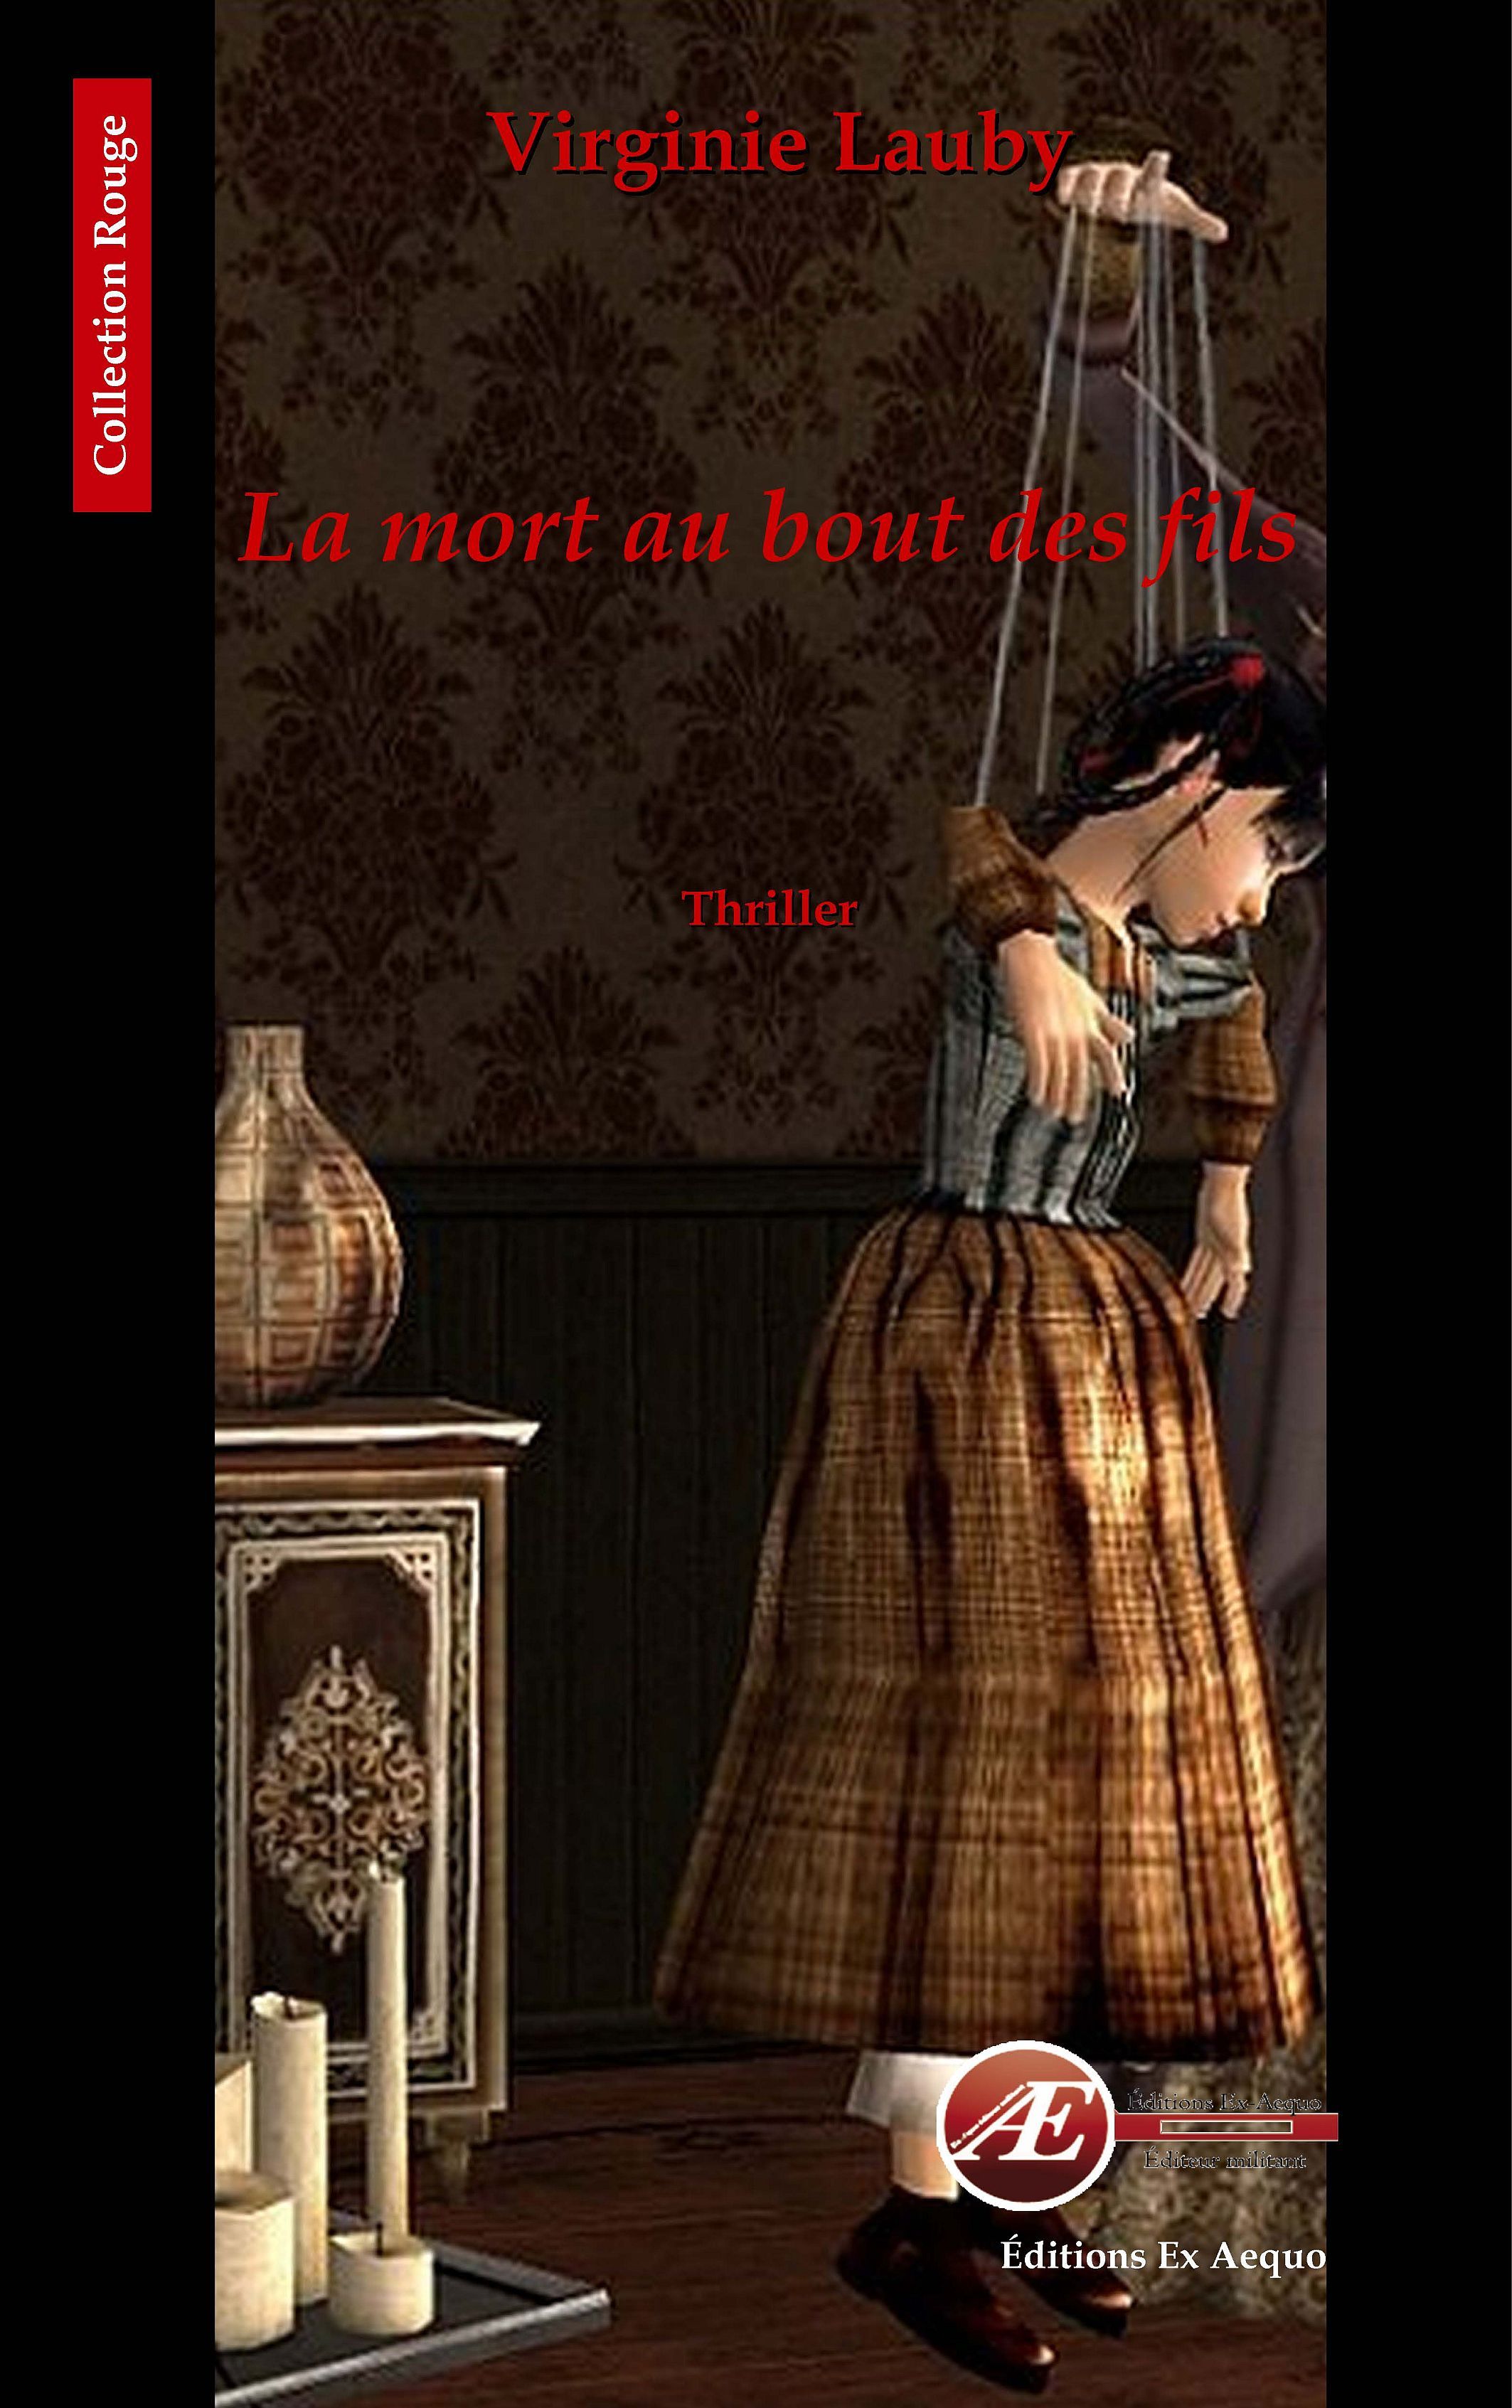 You are currently viewing La mort au bout des fils, de Virginie Lauby